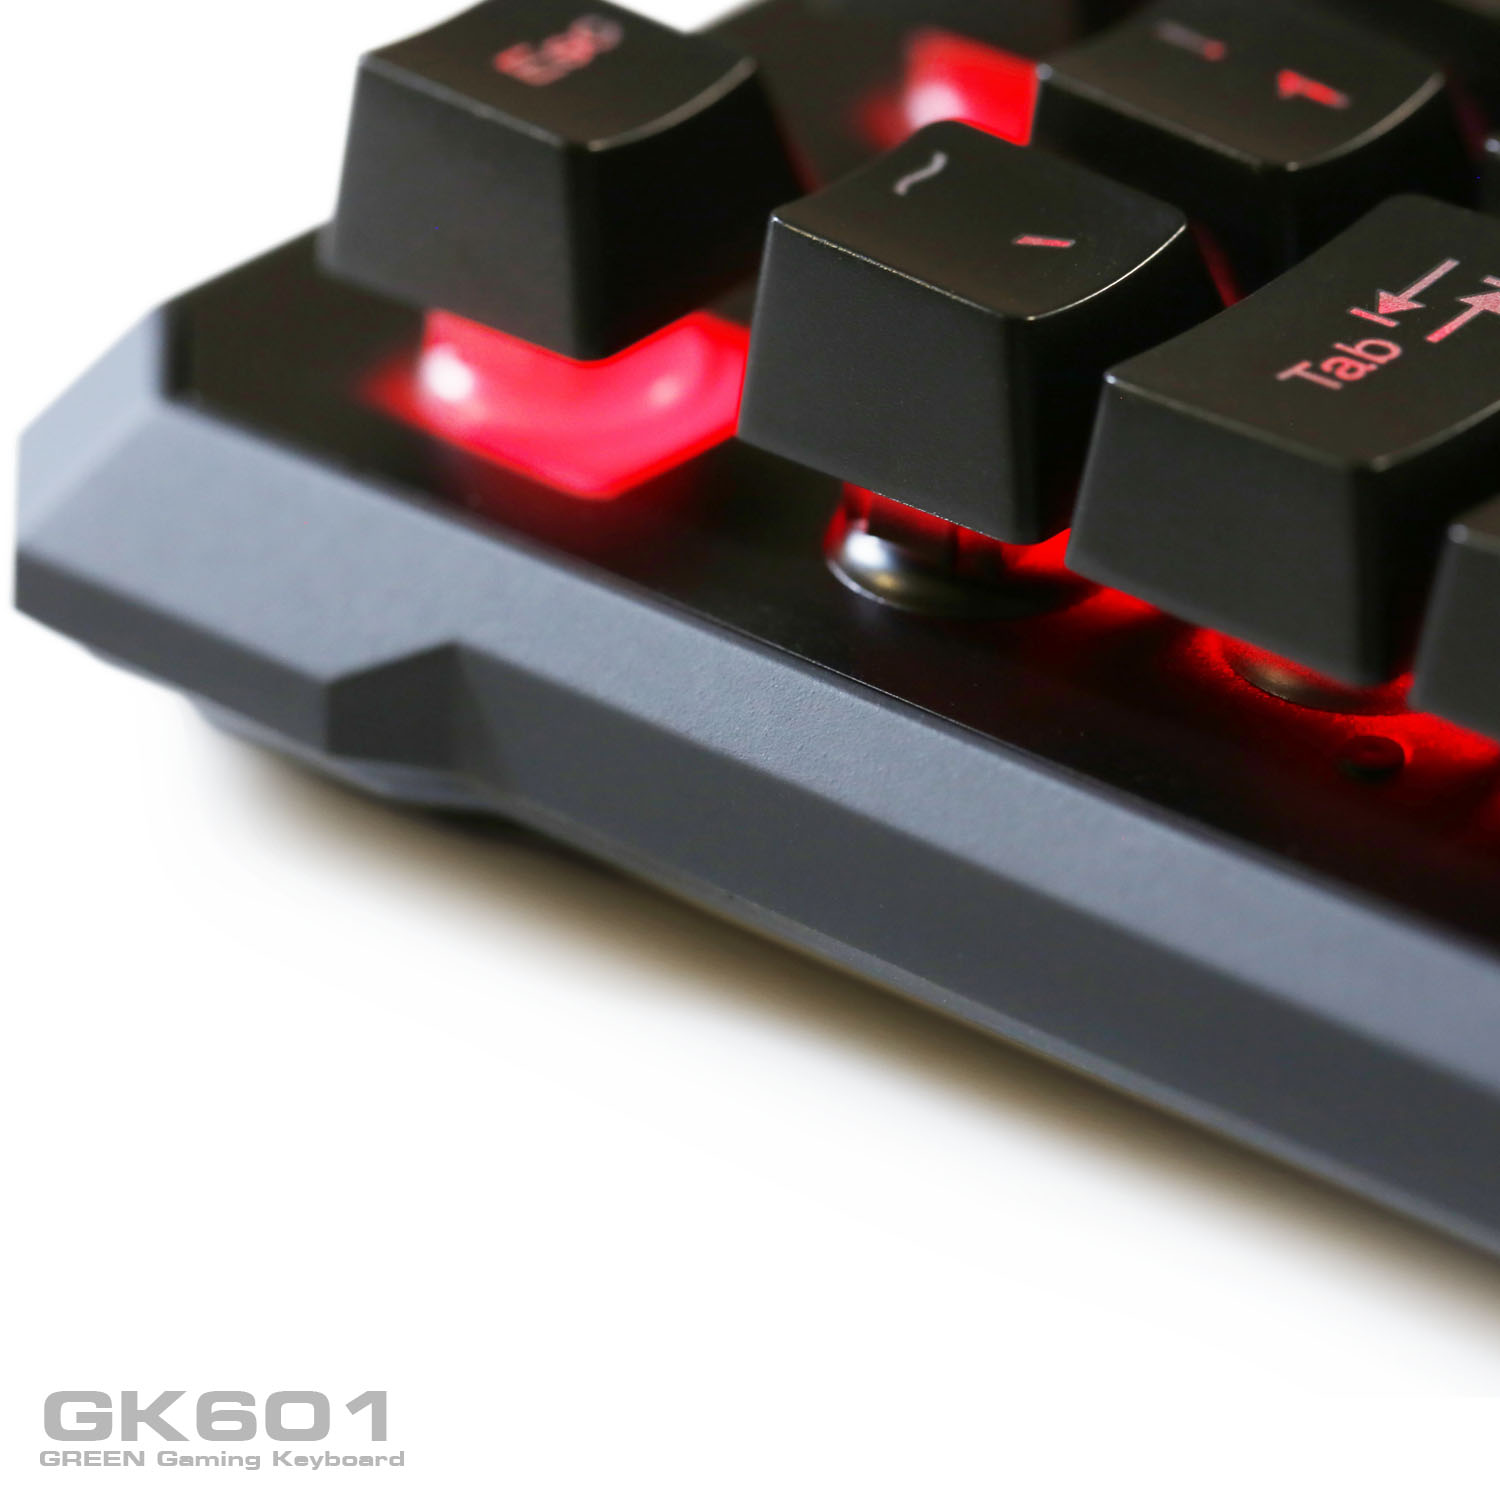 Keyboard_RGB_Green_GK601_RGB